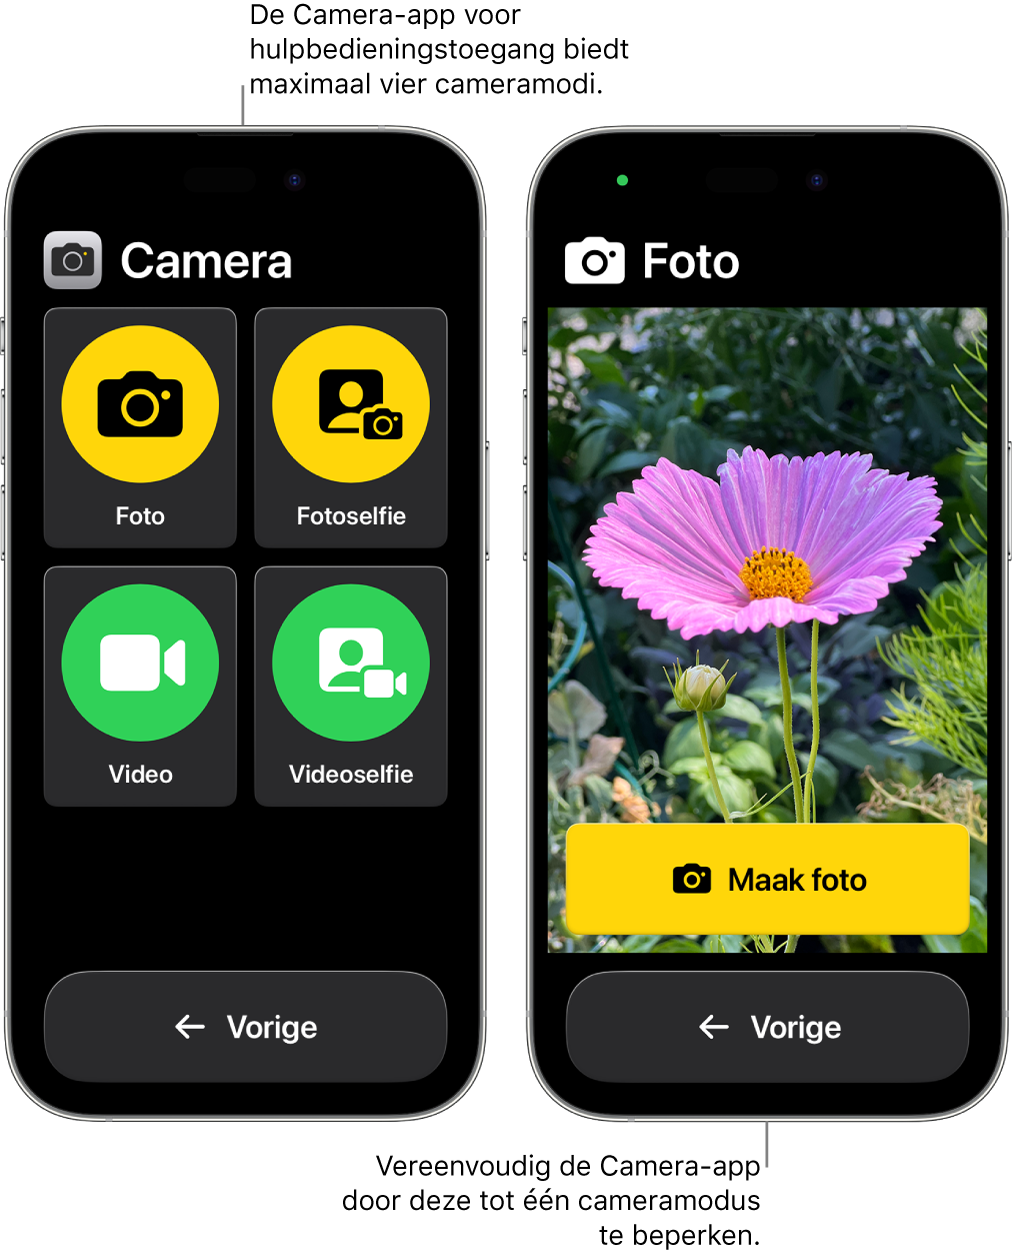 Twee iPhones met hulpbedieningstoegang. Op de ene iPhone is de Camera-app te zien met cameramodi waaruit de gebruiker kan kiezen, zoals 'Video' en 'Fotoselfie'. Op de andere iPhone is de Camera-app te zien met alleen de modus voor het maken van foto's.